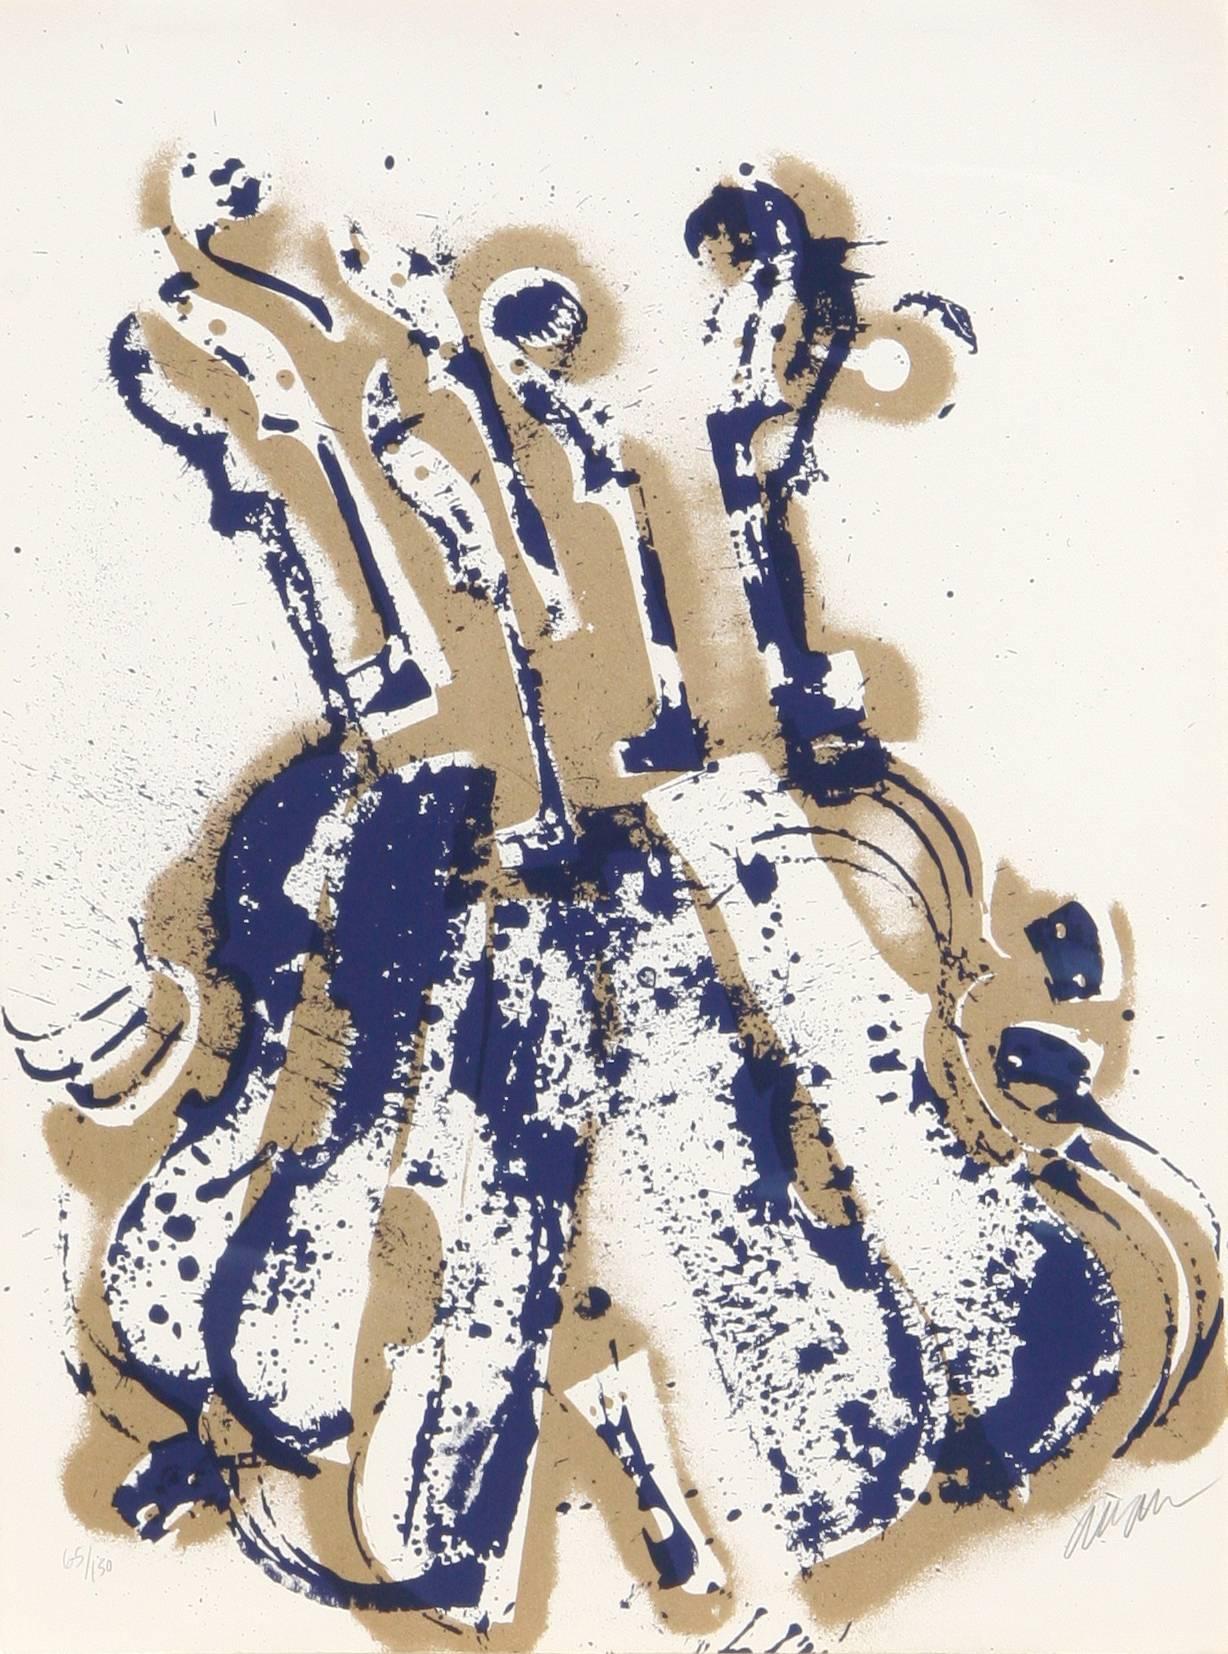 Künstler:  Arman, Franzose (1929 - 2005)
Titel:  Yves Kleins Geigen
Jahr:  1979
Medium:  Siebdruck auf Arches-Papier, signiert und nummeriert mit Bleistift
Auflage:  150
Größe:  30 Zoll x 22 Zoll (76,2 cm x 55,88 cm)